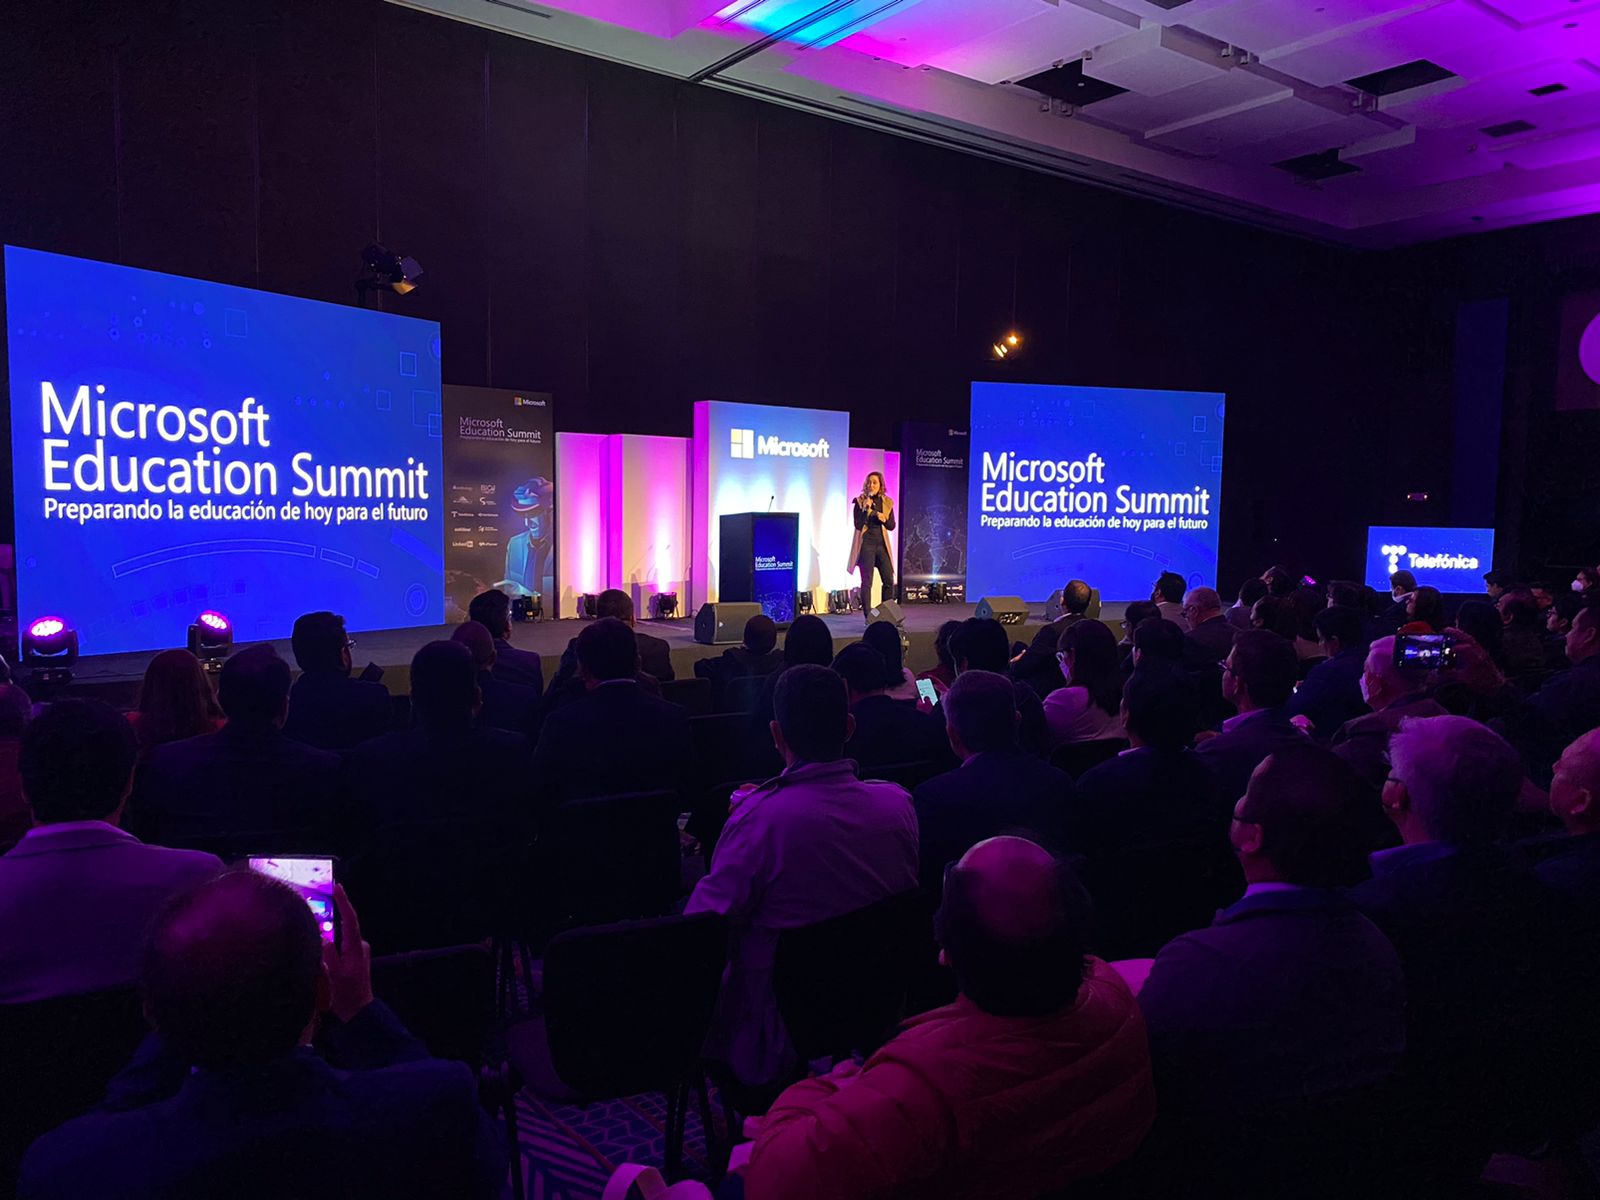 Microsoft Education Summit Perú 2022: Tecnología para la educación: el potencial va mucho más allá del aprendizaje remoto.